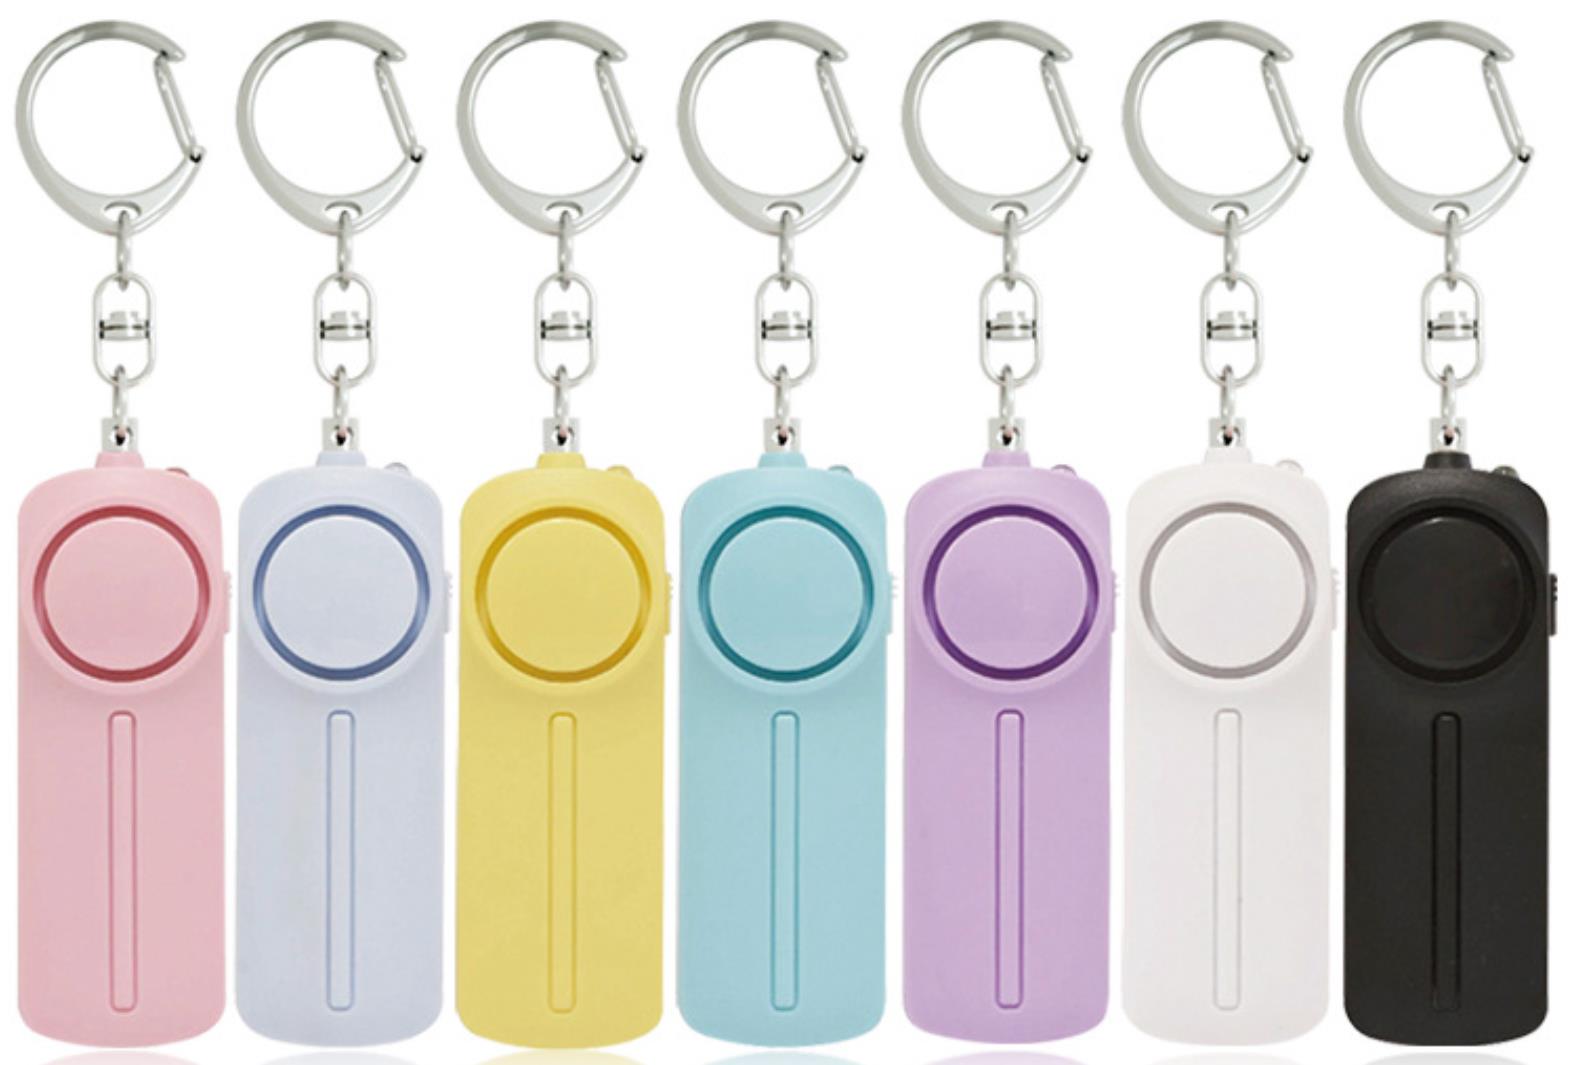 130db veilig geluid Persoonlijk alarm Keychain Bright Led Light Self_Defense Emergency Alert Key Ring voor vrouwelijke kinderen